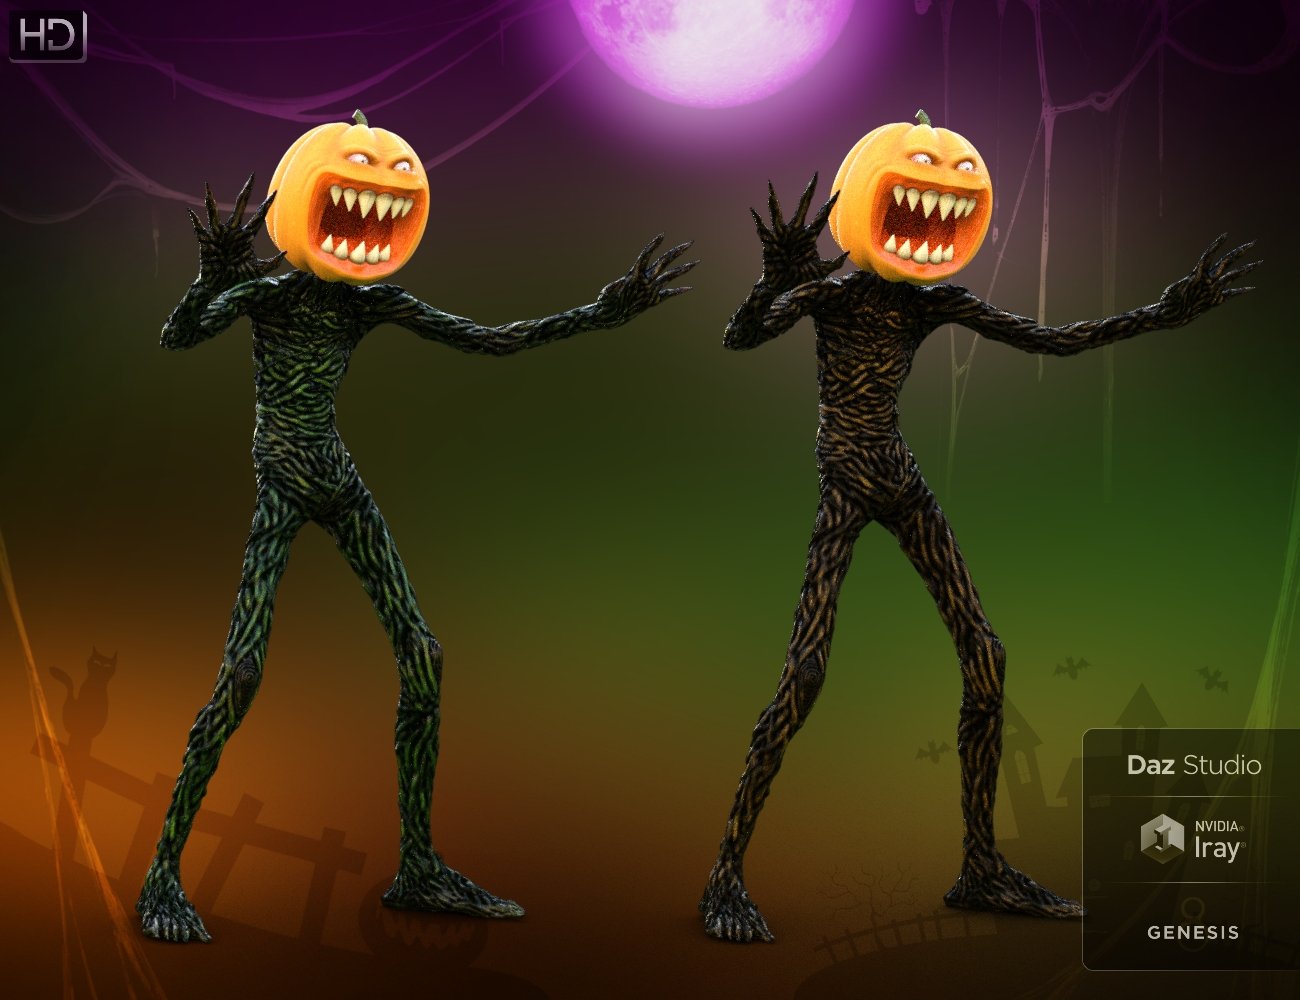 Evil Pumpkin HD for Genesis 8 Male | Daz 3D